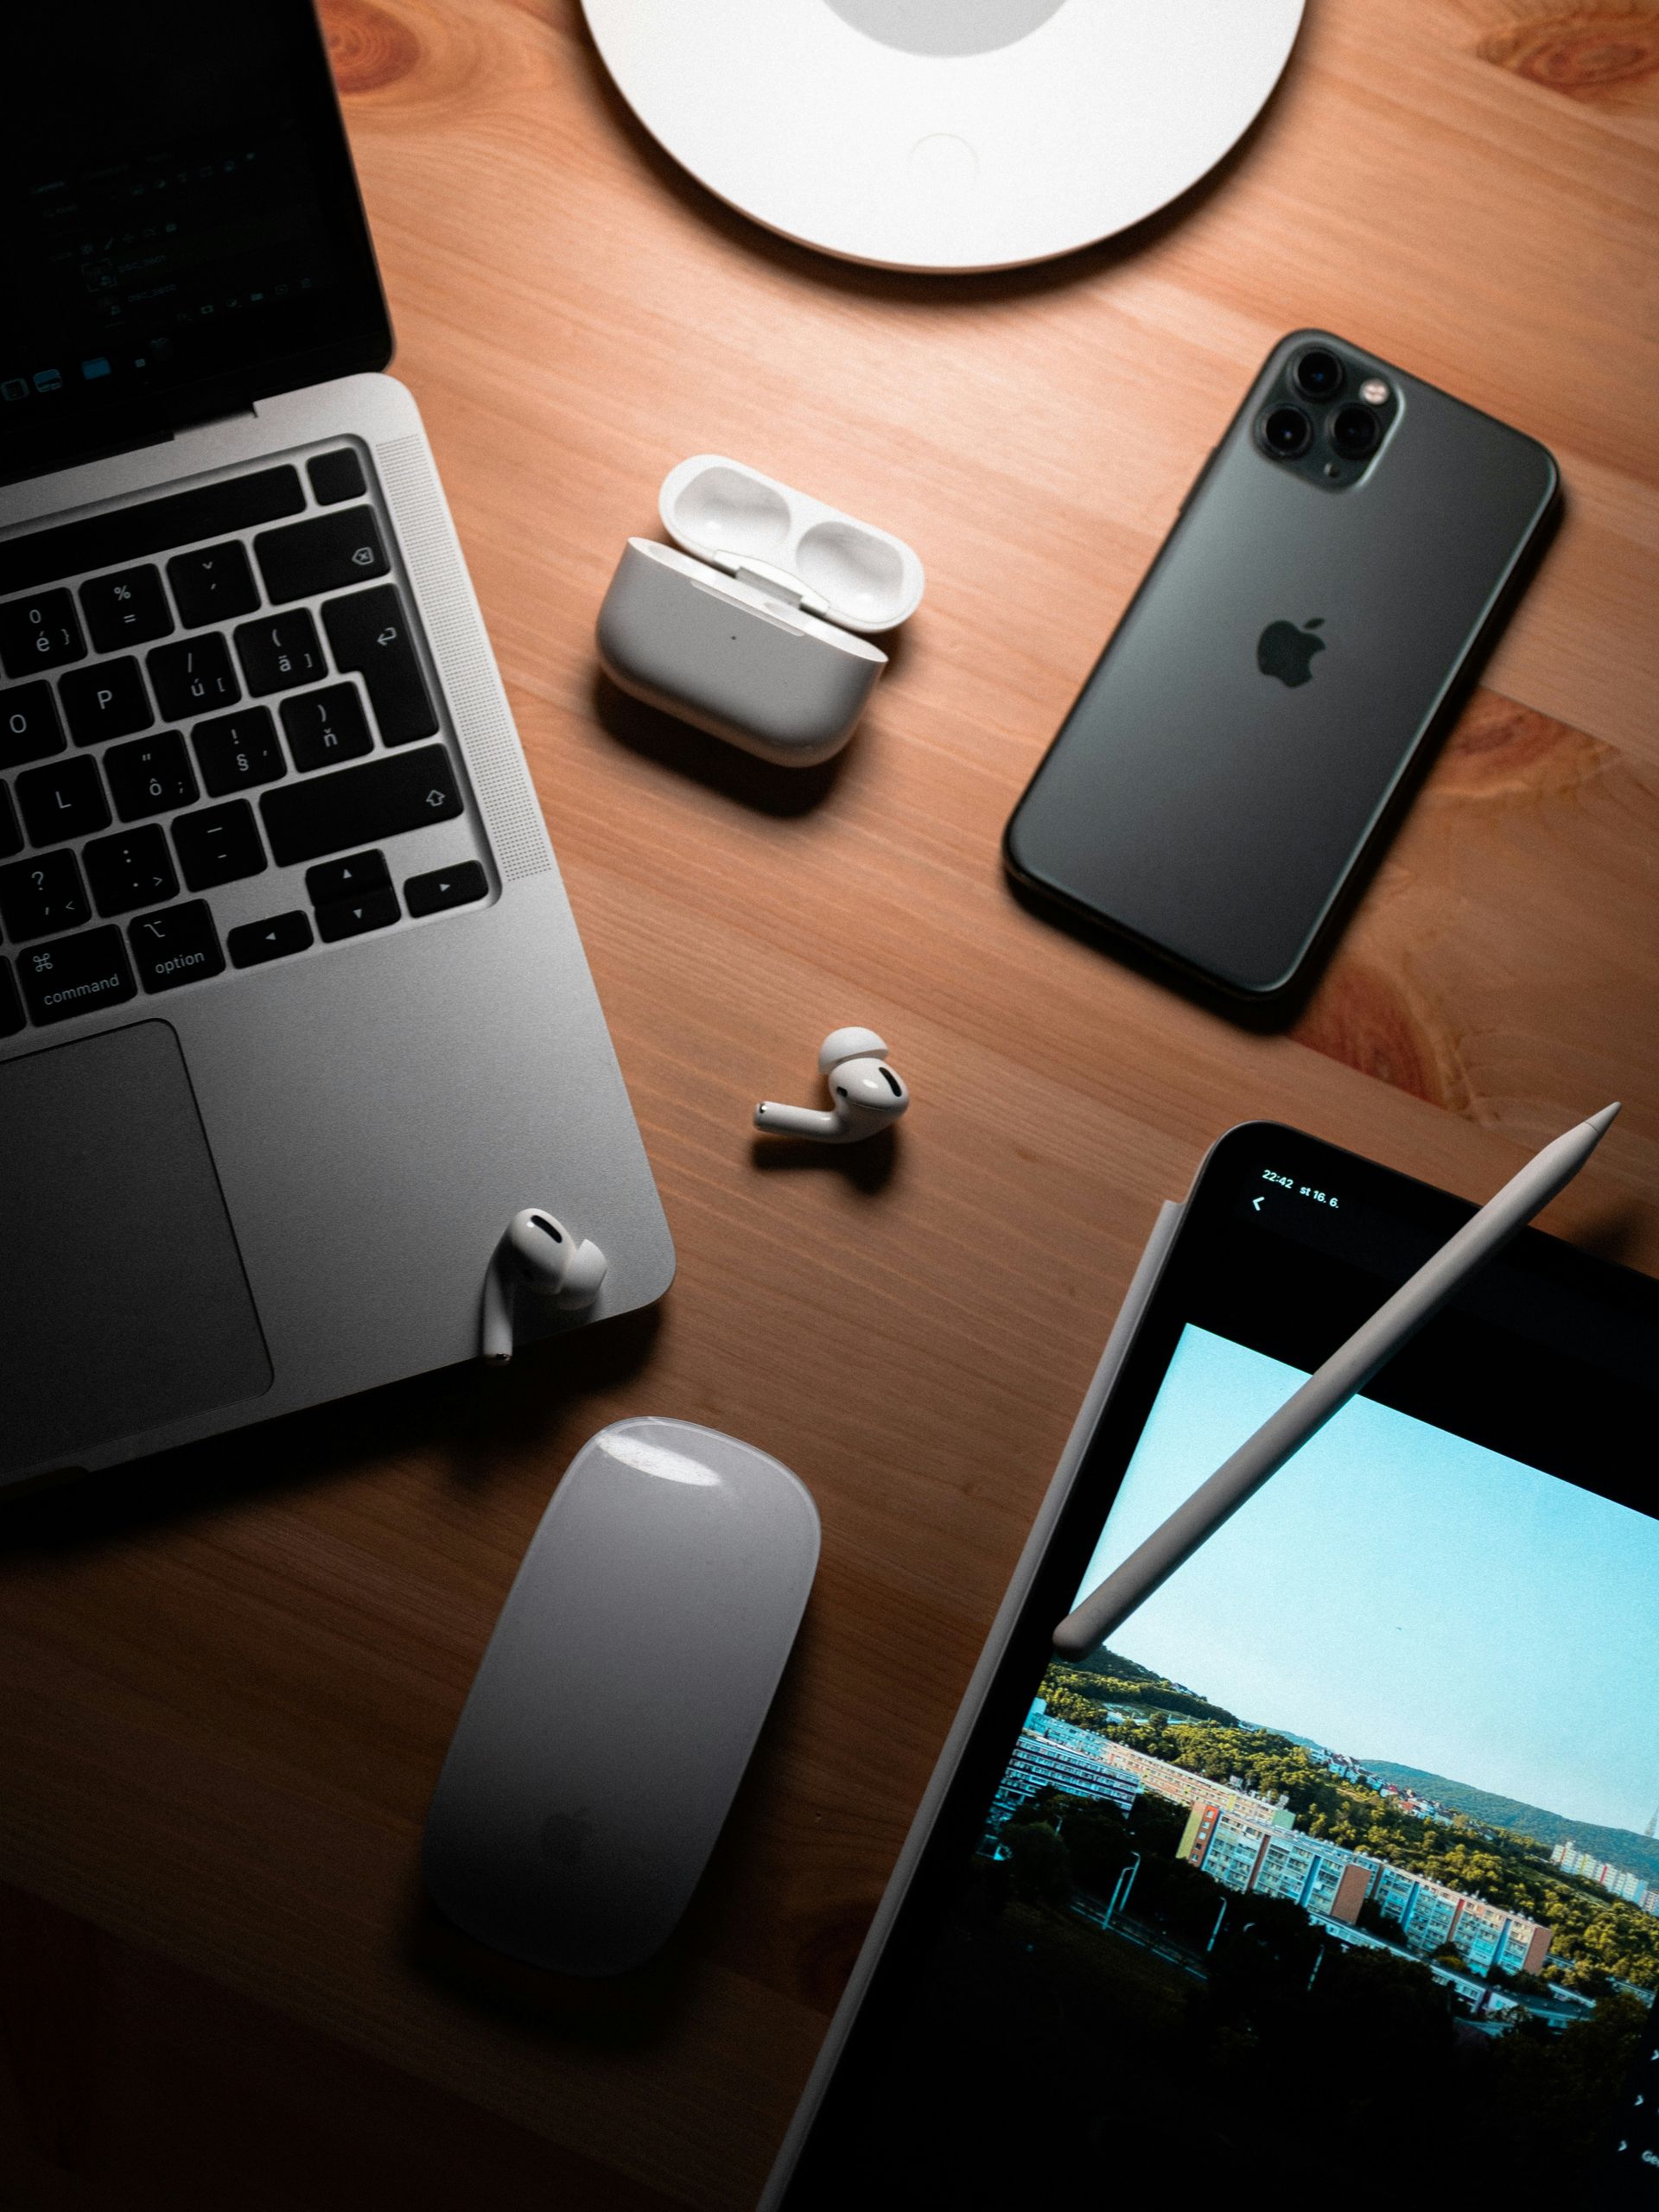 Apple 发布针对 iPhone、iPad 和 Mac 设备的重要安全更新